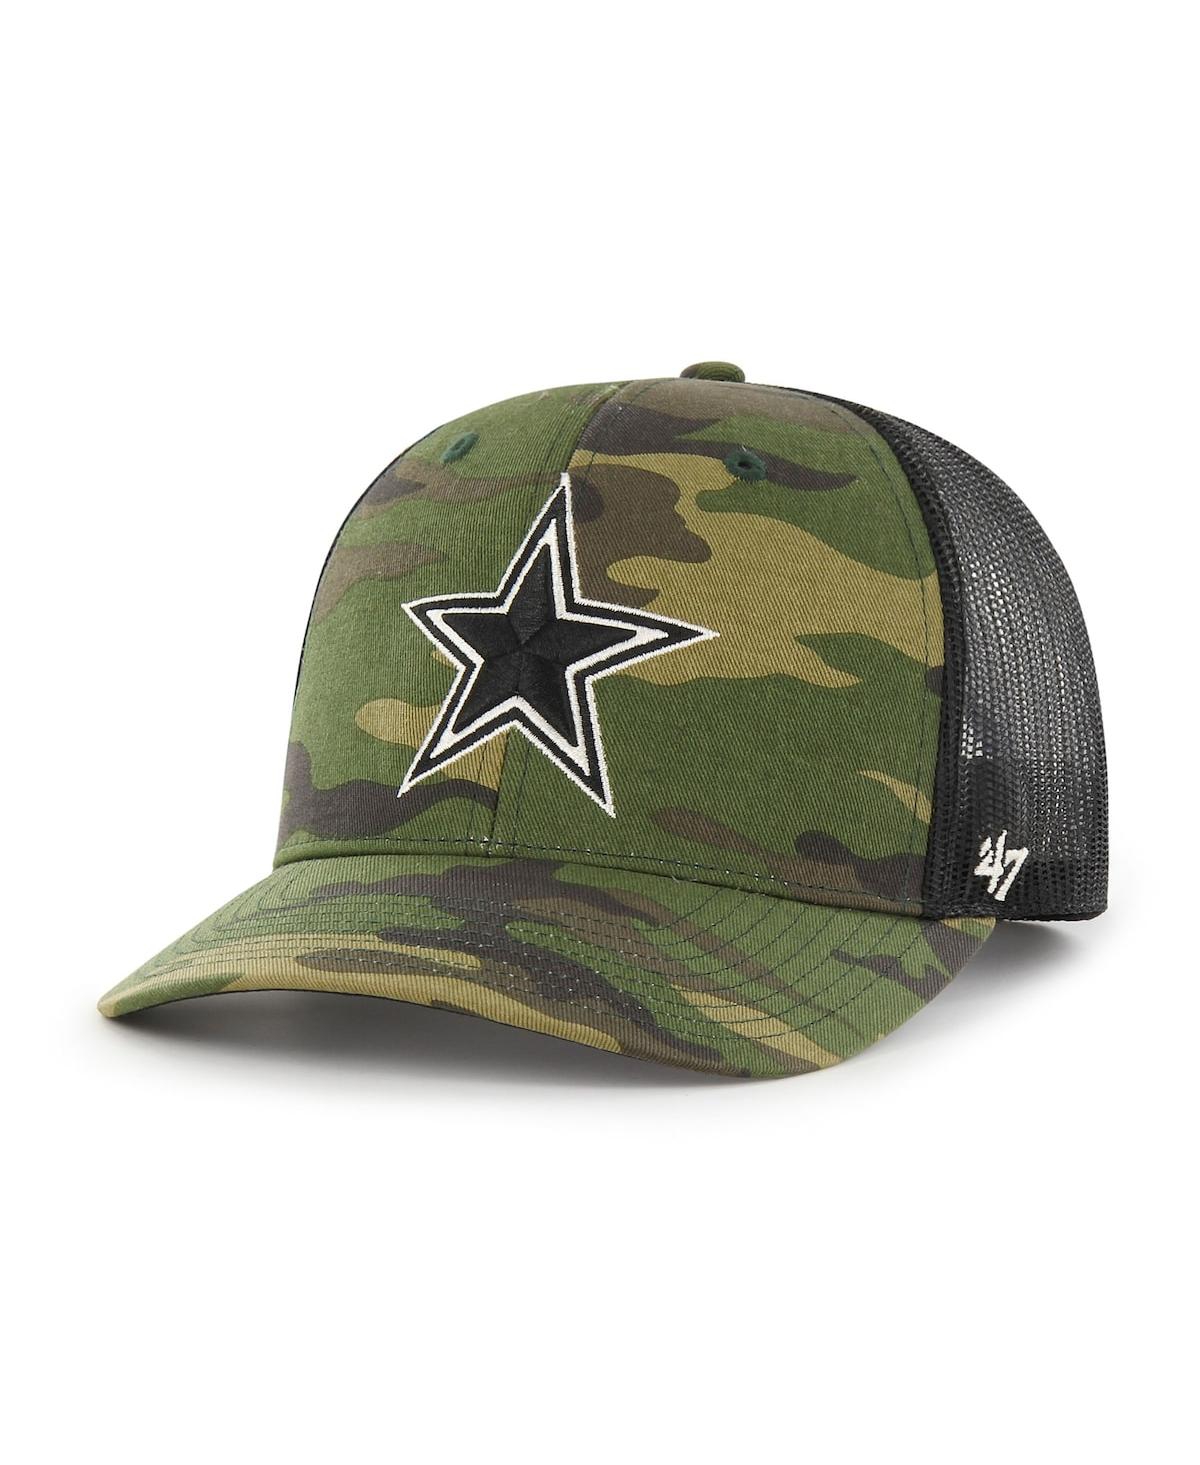 47 Brand Men's ' Camo Dallas Cowboys Trucker Adjustable Hat